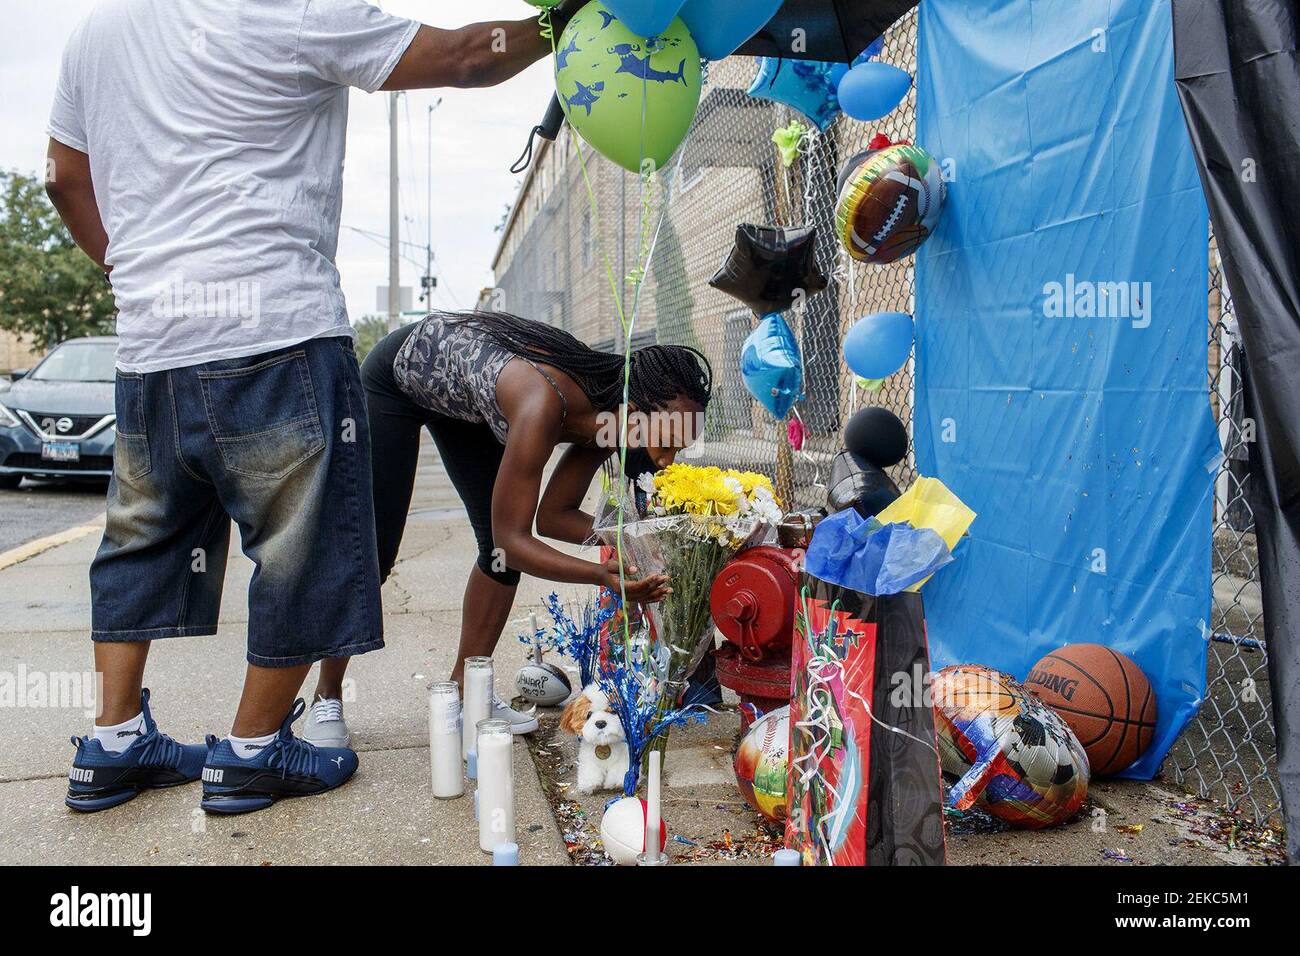 Jalisa Ford se arrodilla en un memorial para su hijo de 9 años Janari Ricks, quien fue asesinado fatalmente el 31 de julio de 2020, mientras jugaba con amigos en las casas de la ciudad de Cabrini Green en Chicago, Ill. (Armando L. Sanchez/Chicago Tribune/TNS) Foto de stock